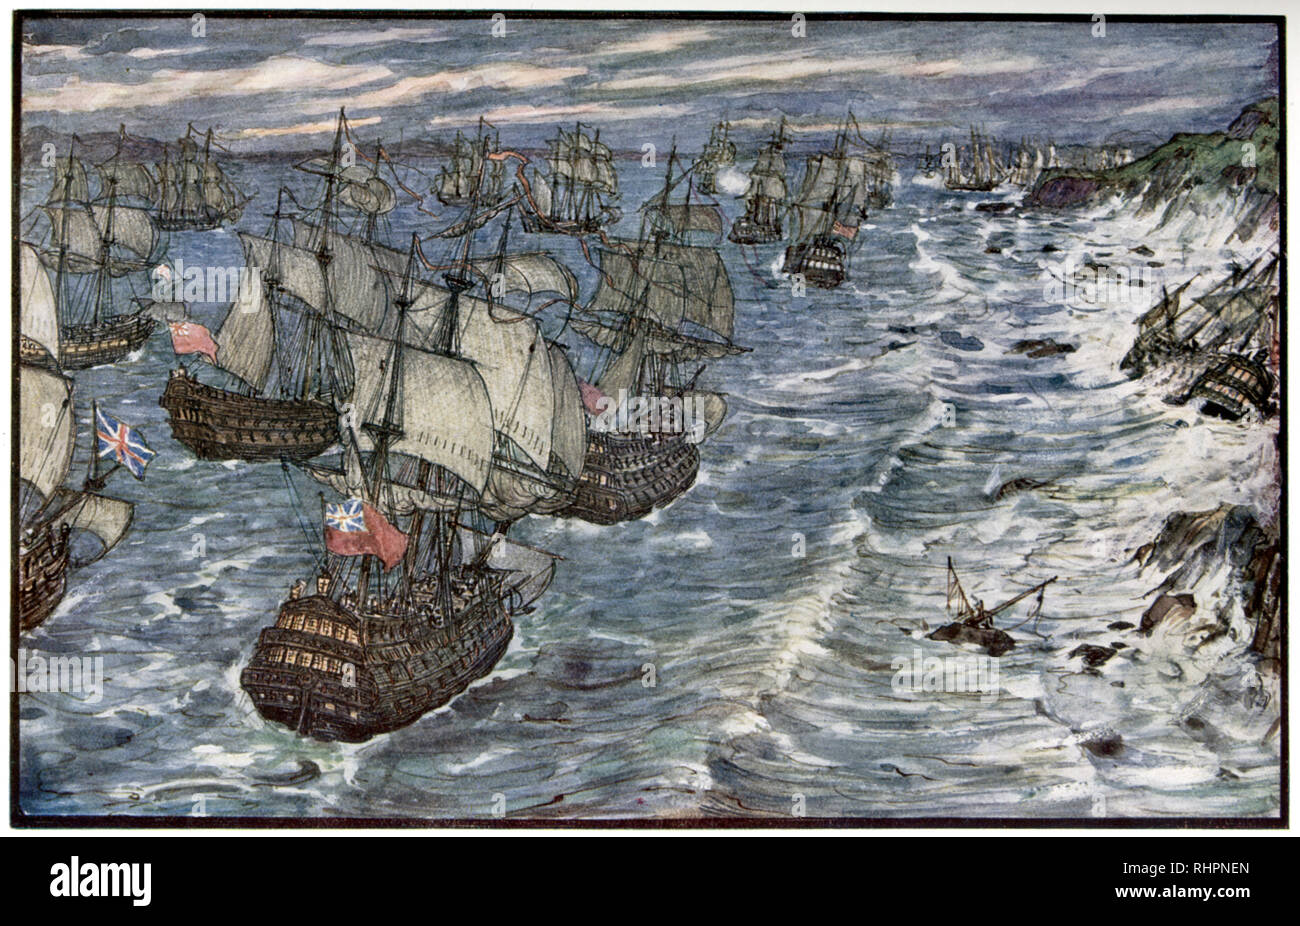 Baie de Quiberon, 1759. Par Henry Justice Ford (1860-1941). La bataille de la baie de Quiberon (bataille des Cardinaux) a été un engagement naval décisif mené le 20th novembre 1759 au cours de la guerre de sept ans entre la Marine royale et la Marine française. Banque D'Images